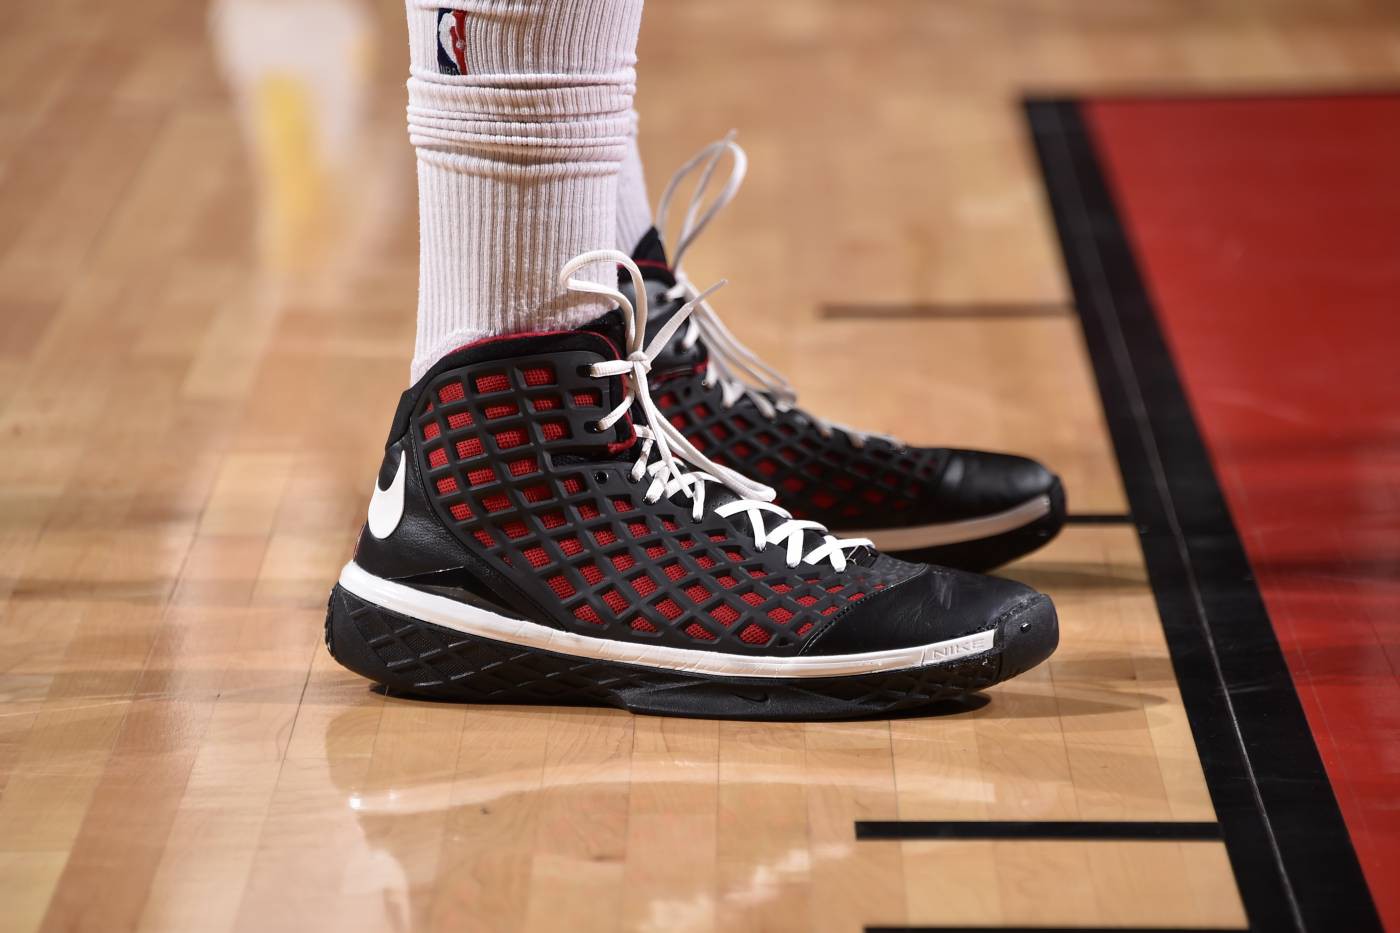 Chi tiết và đầy đủ các mẫu giày khủng của Thánh giày P.J. Tucker đã mang tại NBA Playoffs 2018 - Ảnh 20.